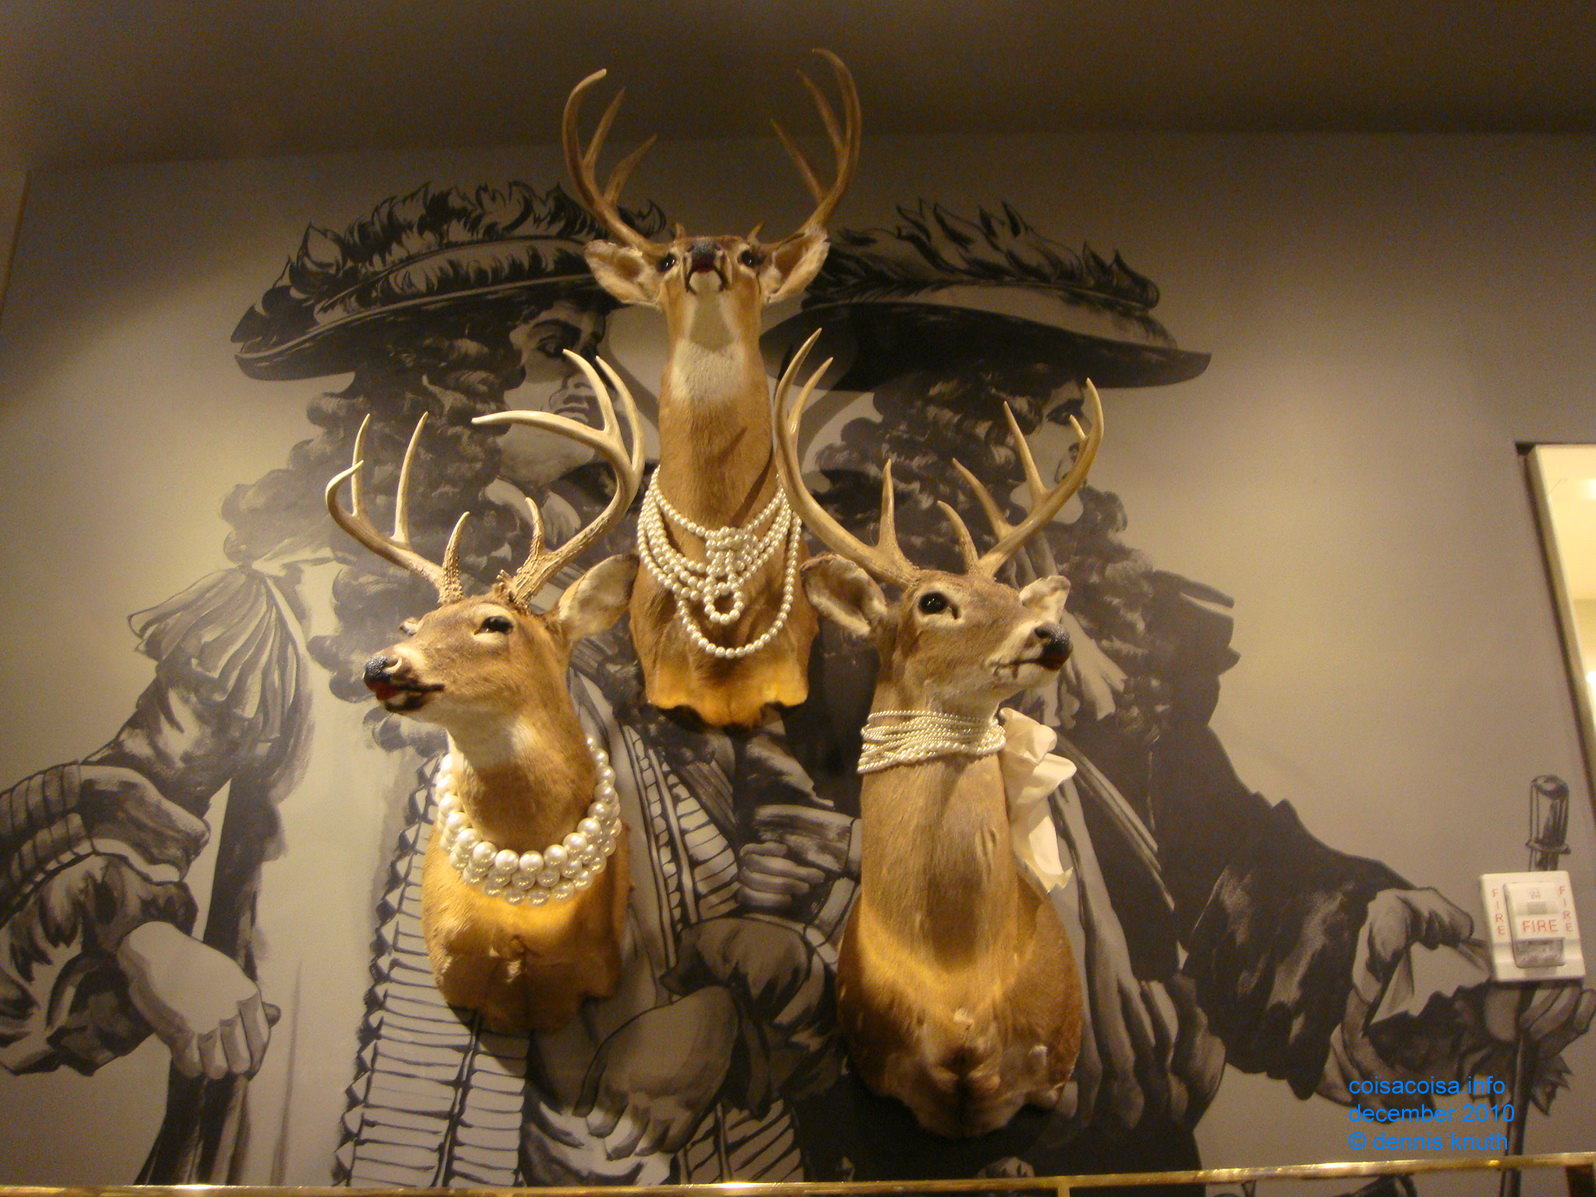 Three Deer in a Christmas Display dress in pearls